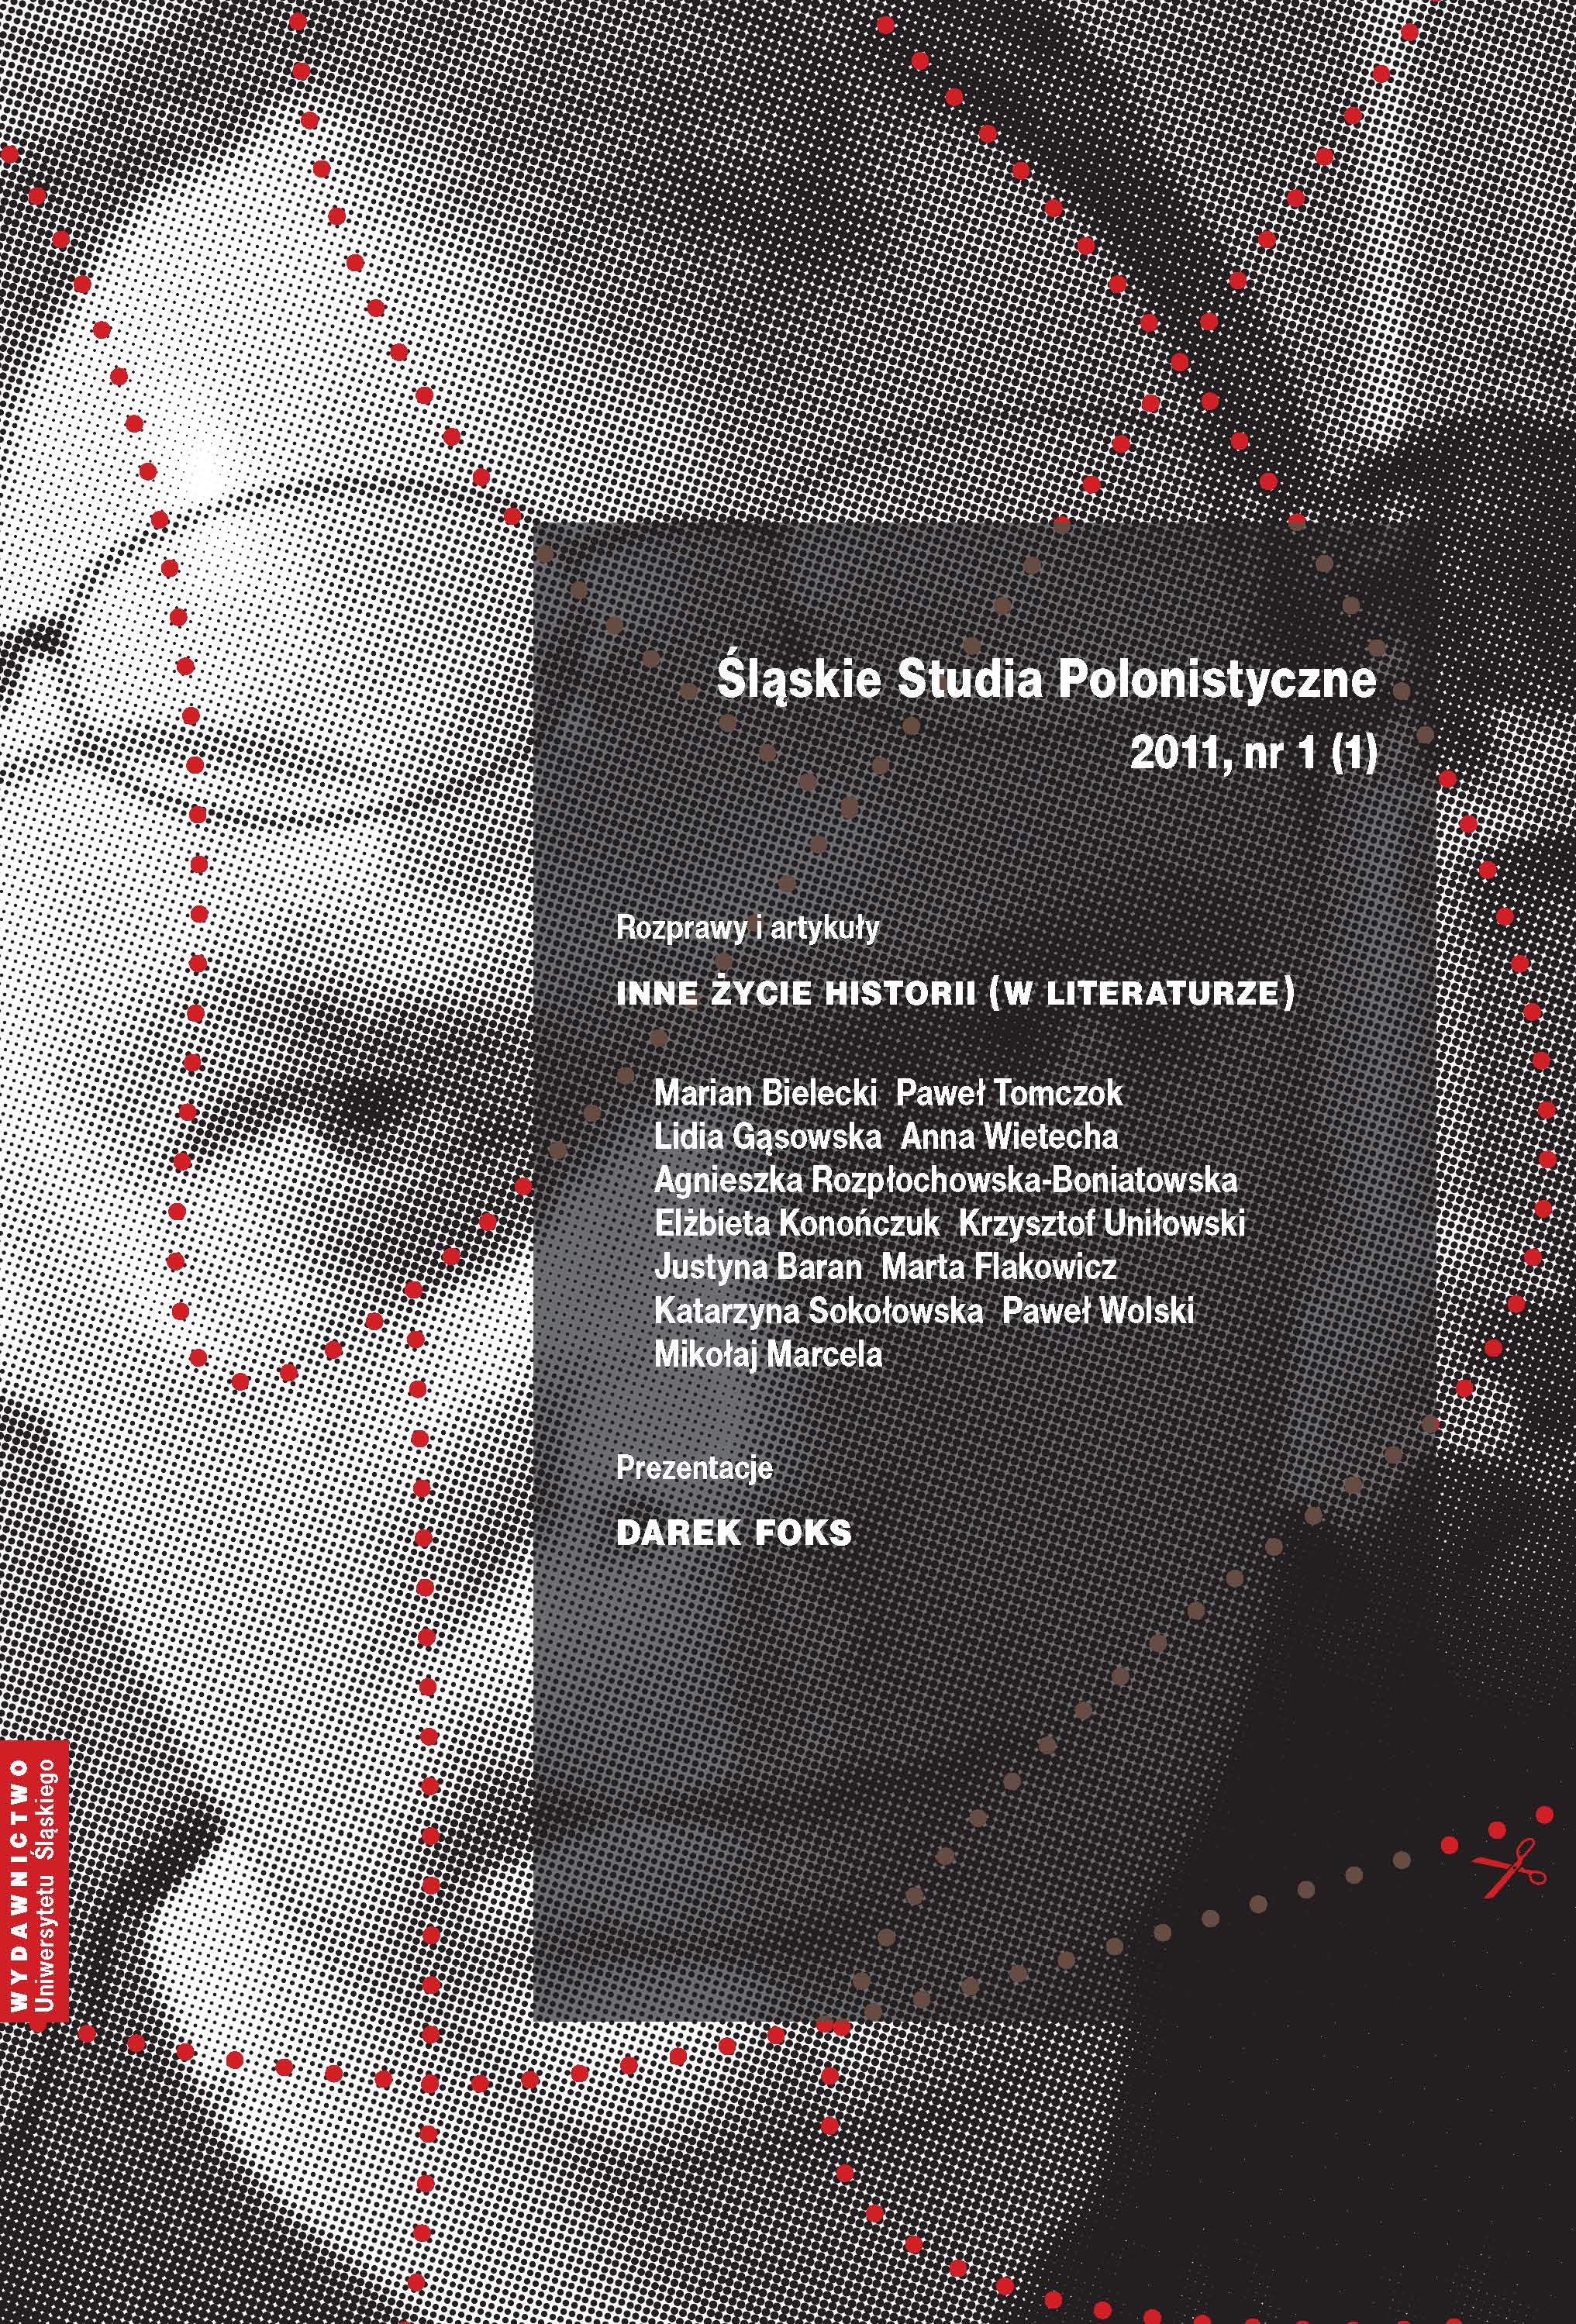 Śląskie Studia Polonistyczne 2011 nr 1 (1)